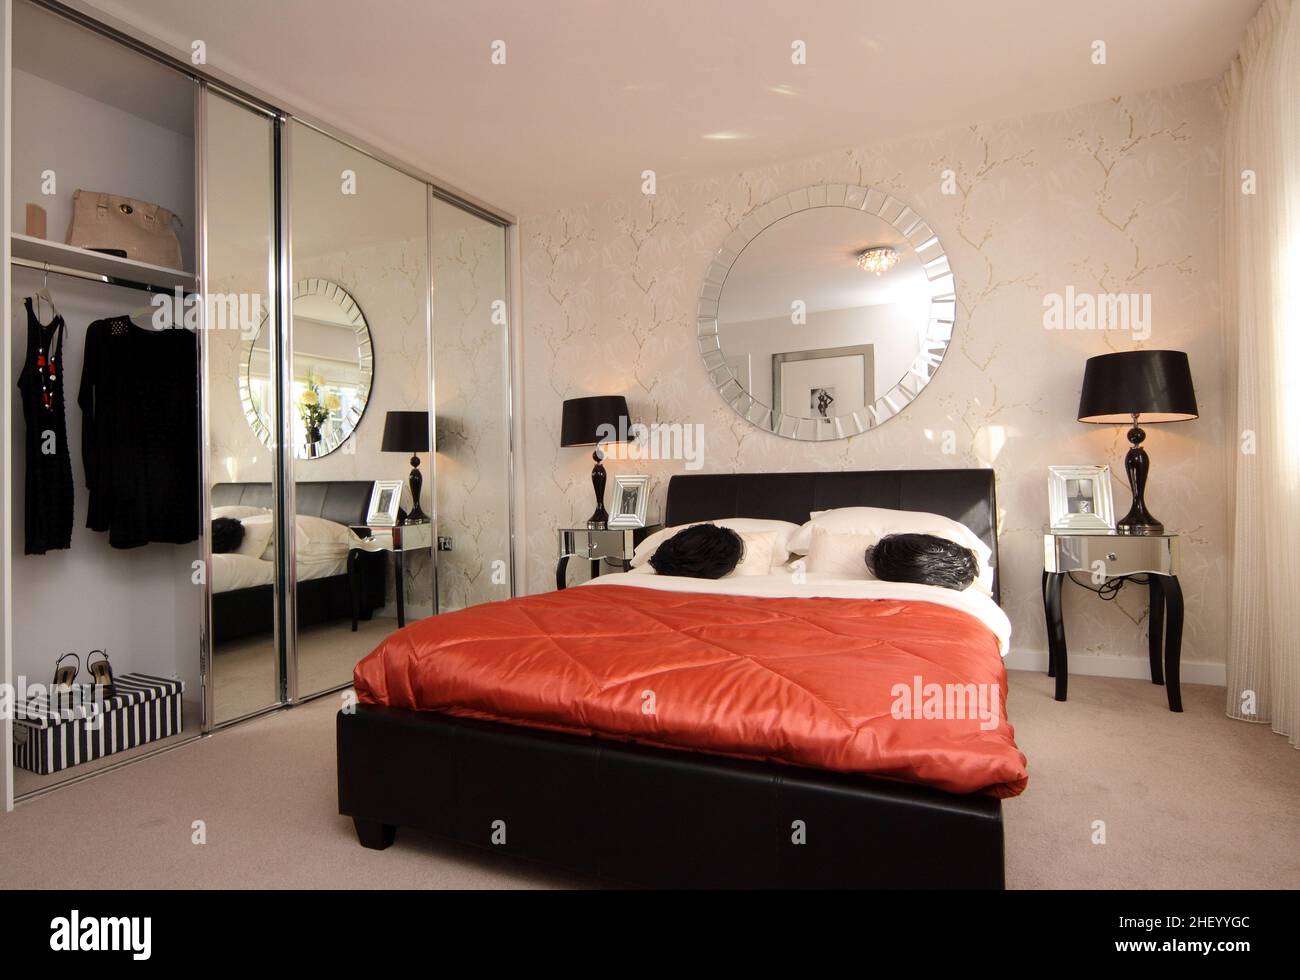 Schlafzimmer im modernen Showhome, Doppelbett mit Kingsize-Bett, orangefarbene Steppdecke, Bettdecke, Nachttischlampen, Wandtapete, verspiegelte Kleiderschränke Stockfoto